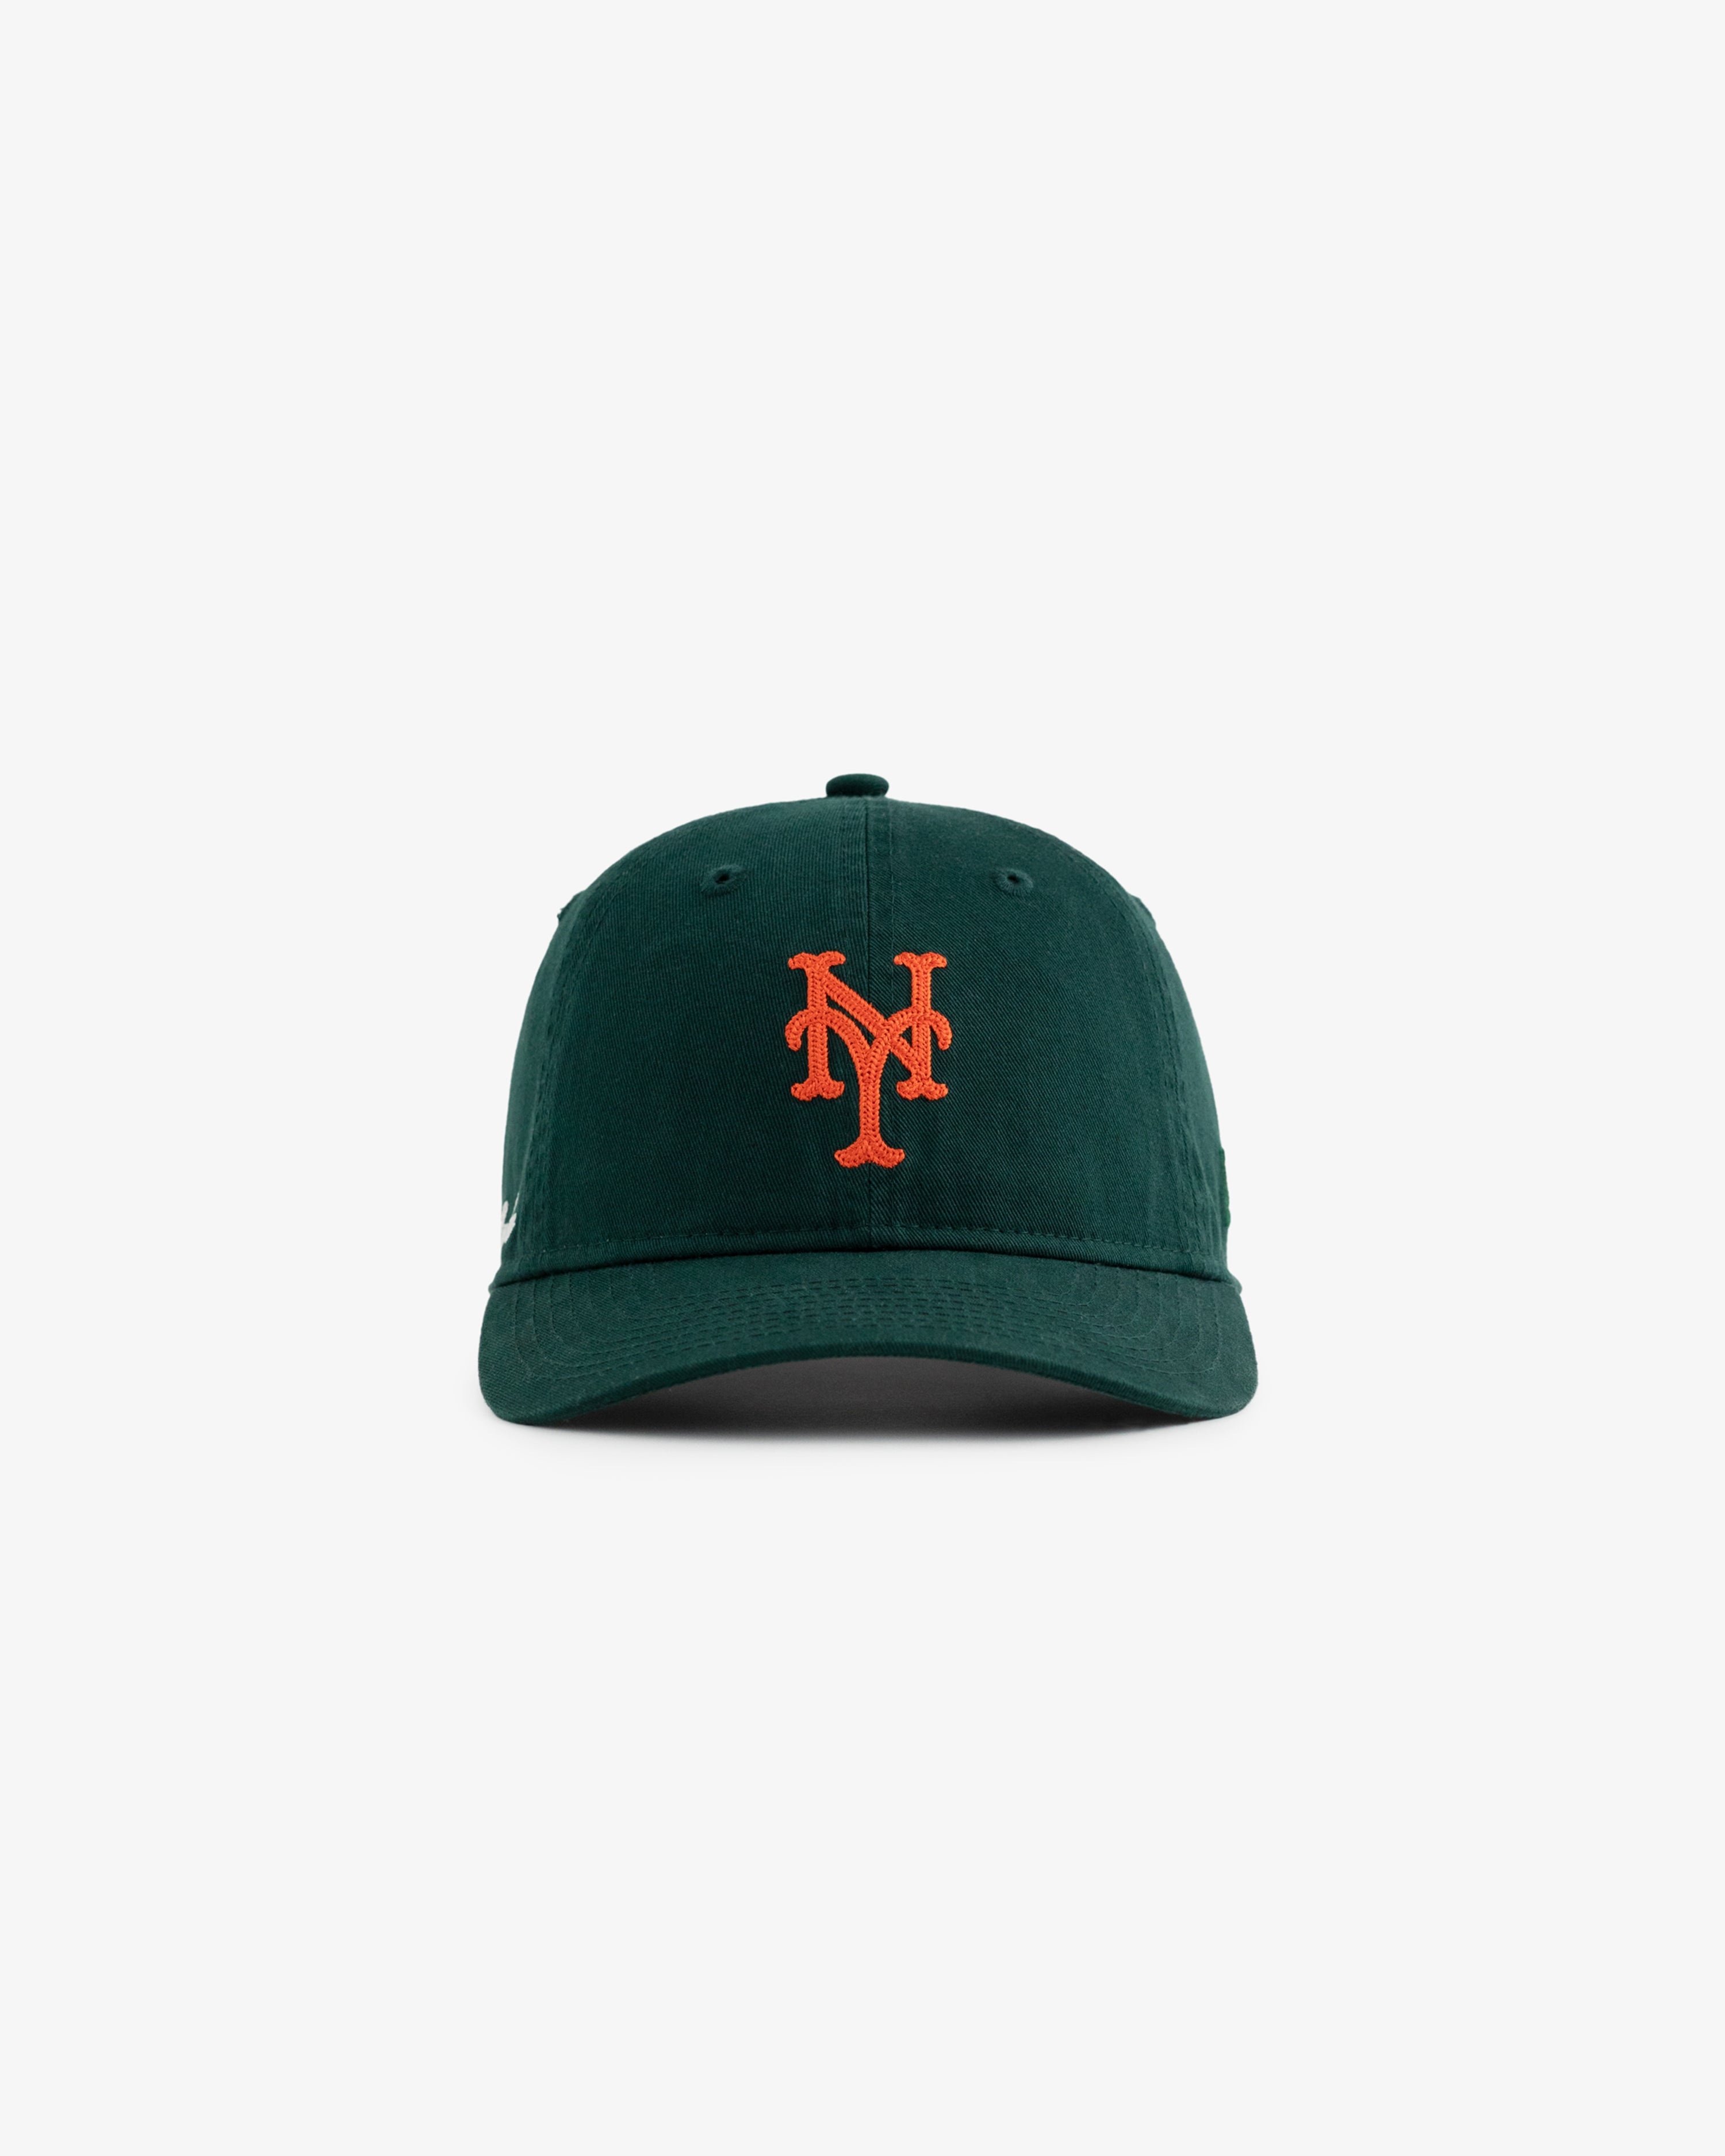 ALD / New Era Chain Stitch Mets Ballpark  Hat